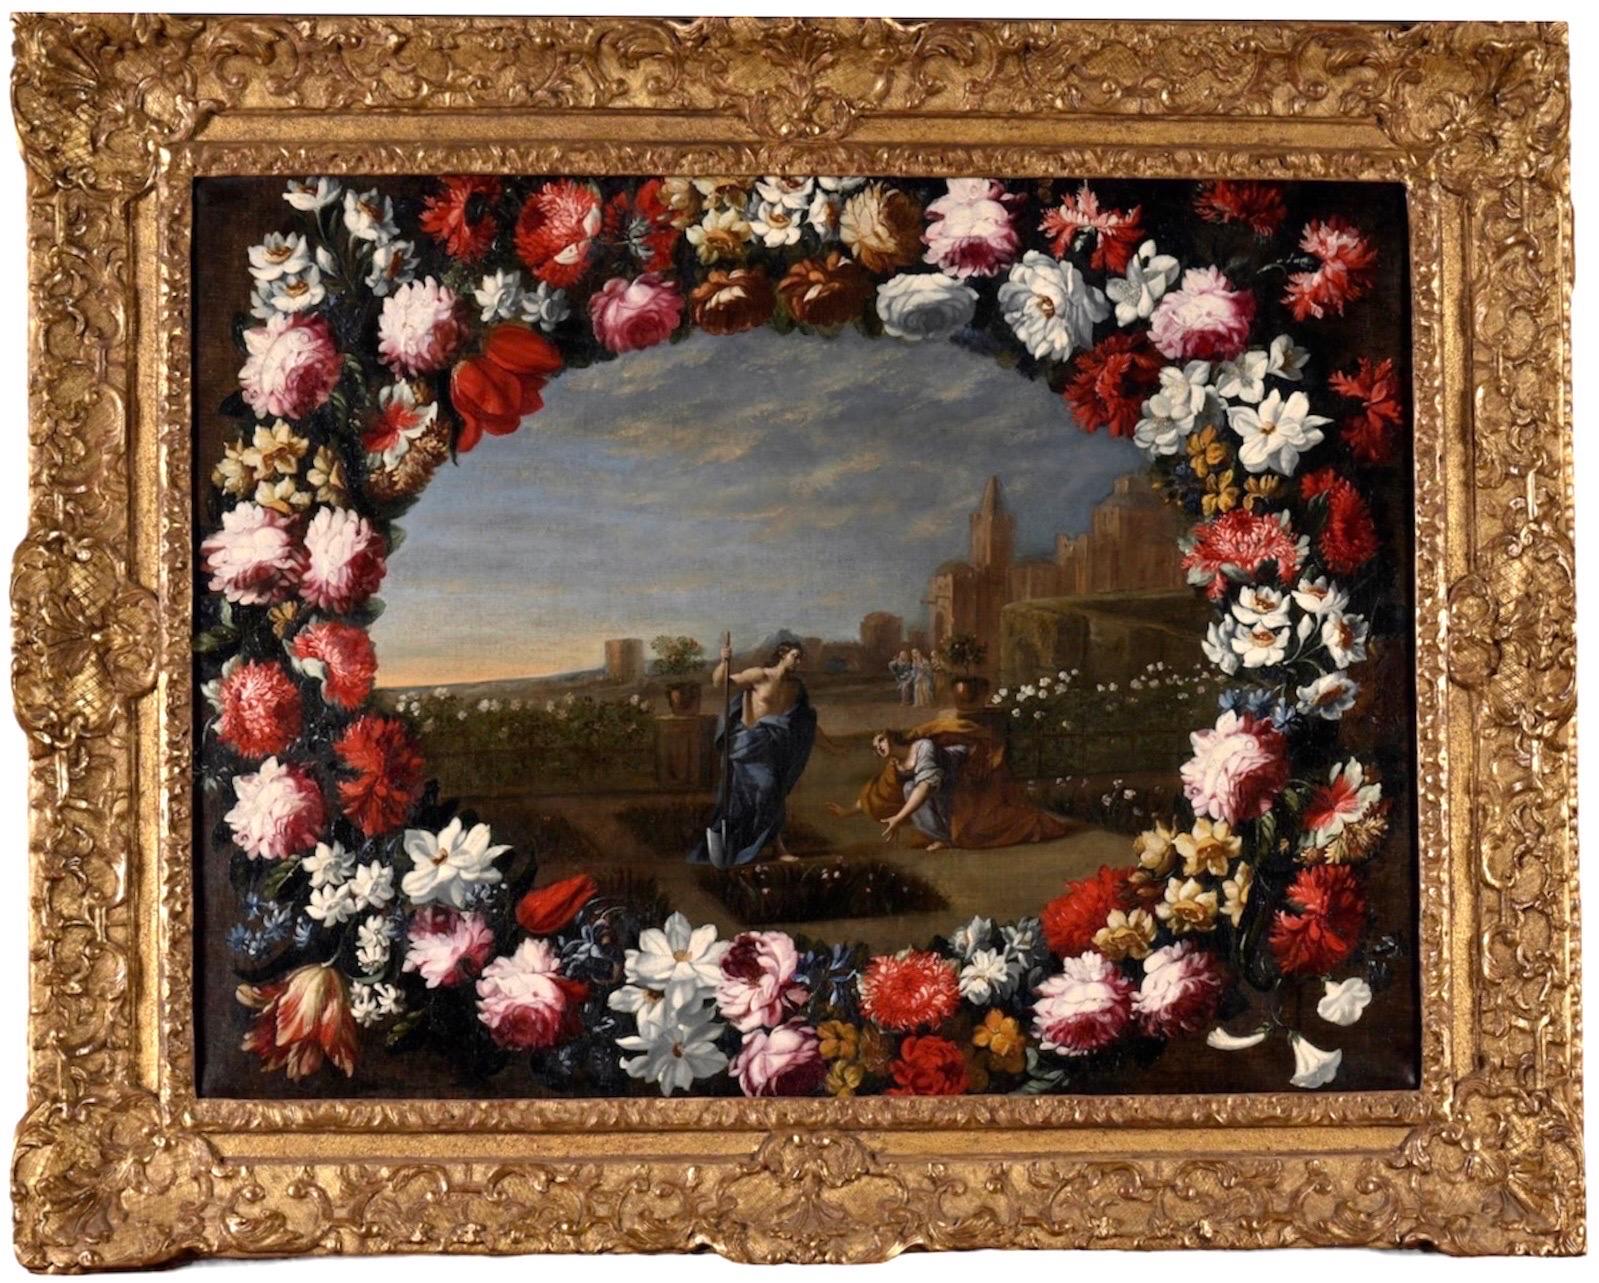 Großer großer italienischer alter Meister des 17. Jahrhunderts – Noli me tangere – Christus im Garten (Alte Meister), Painting, von Pier Francesco Cittadini